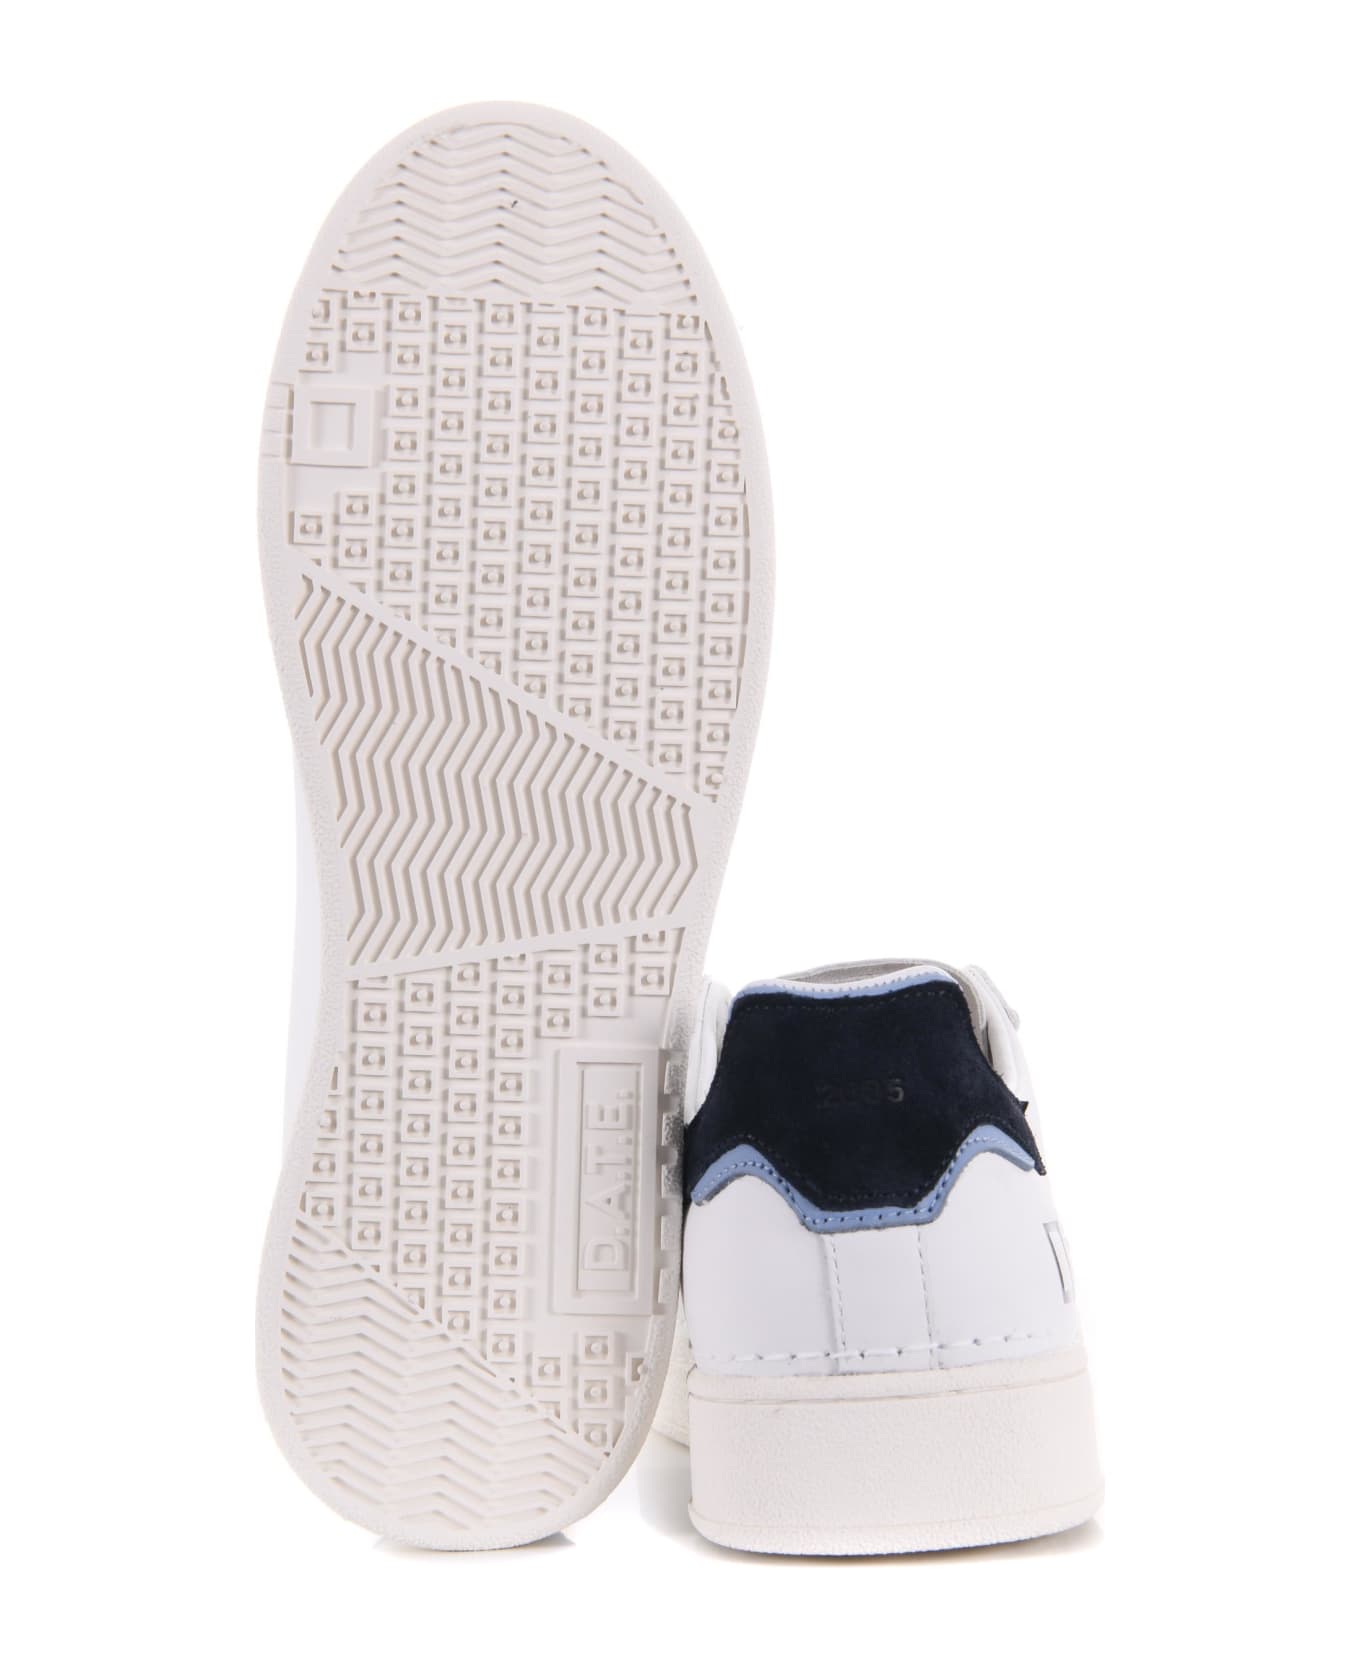 D.A.T.E. Men's Sneakers "base Calf" In Leather - Bianco/blu